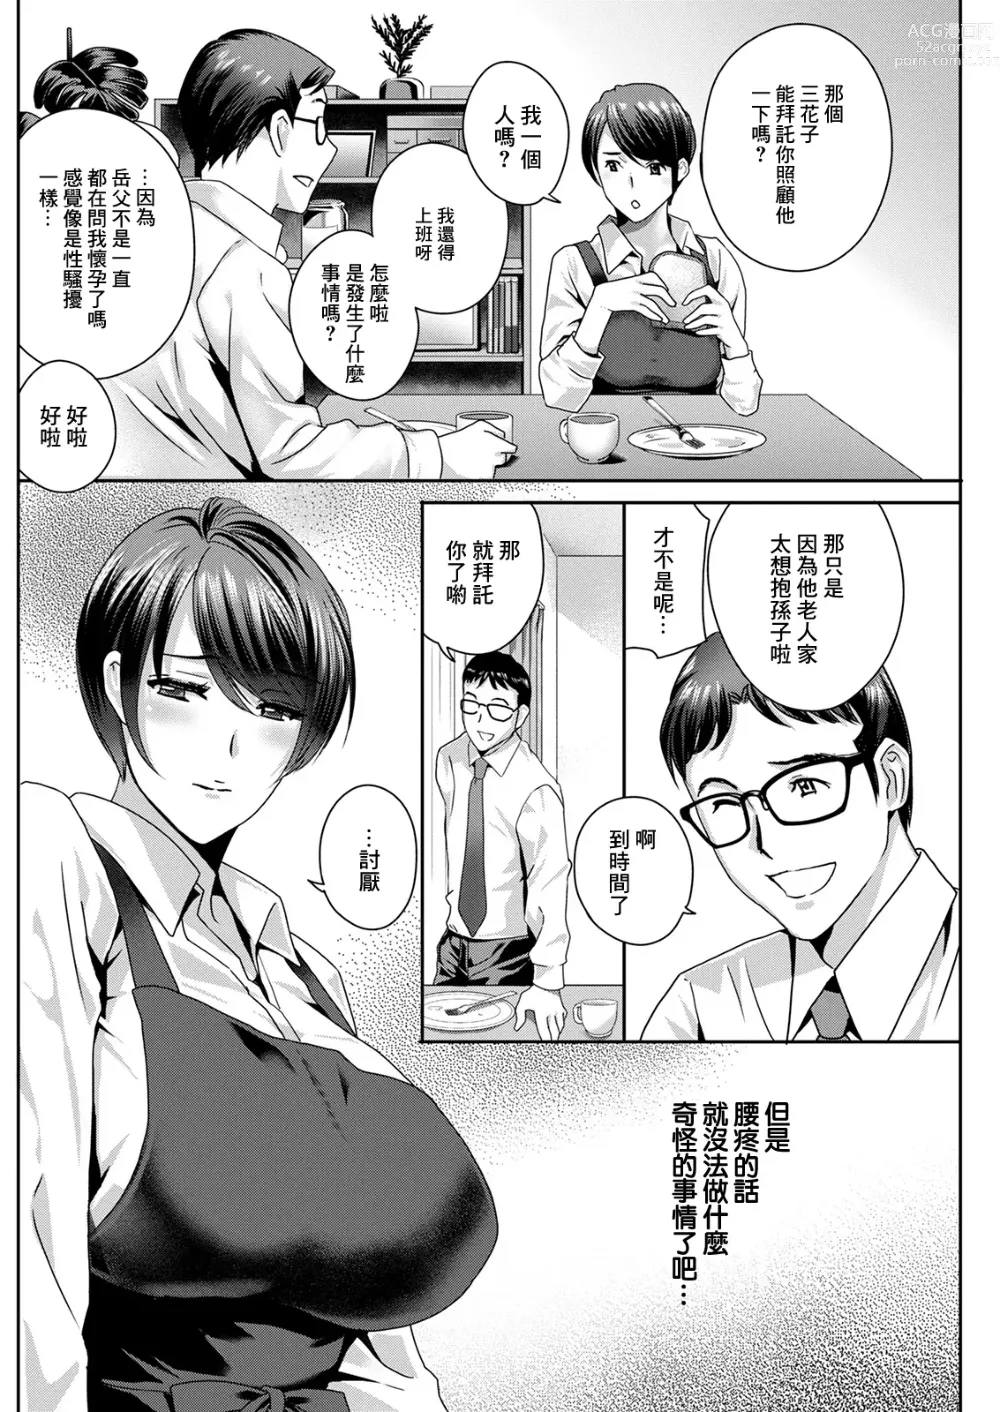 Page 2 of manga ふしだらな肉体 ~絕倫岳父的懷孕指南~ 第2話